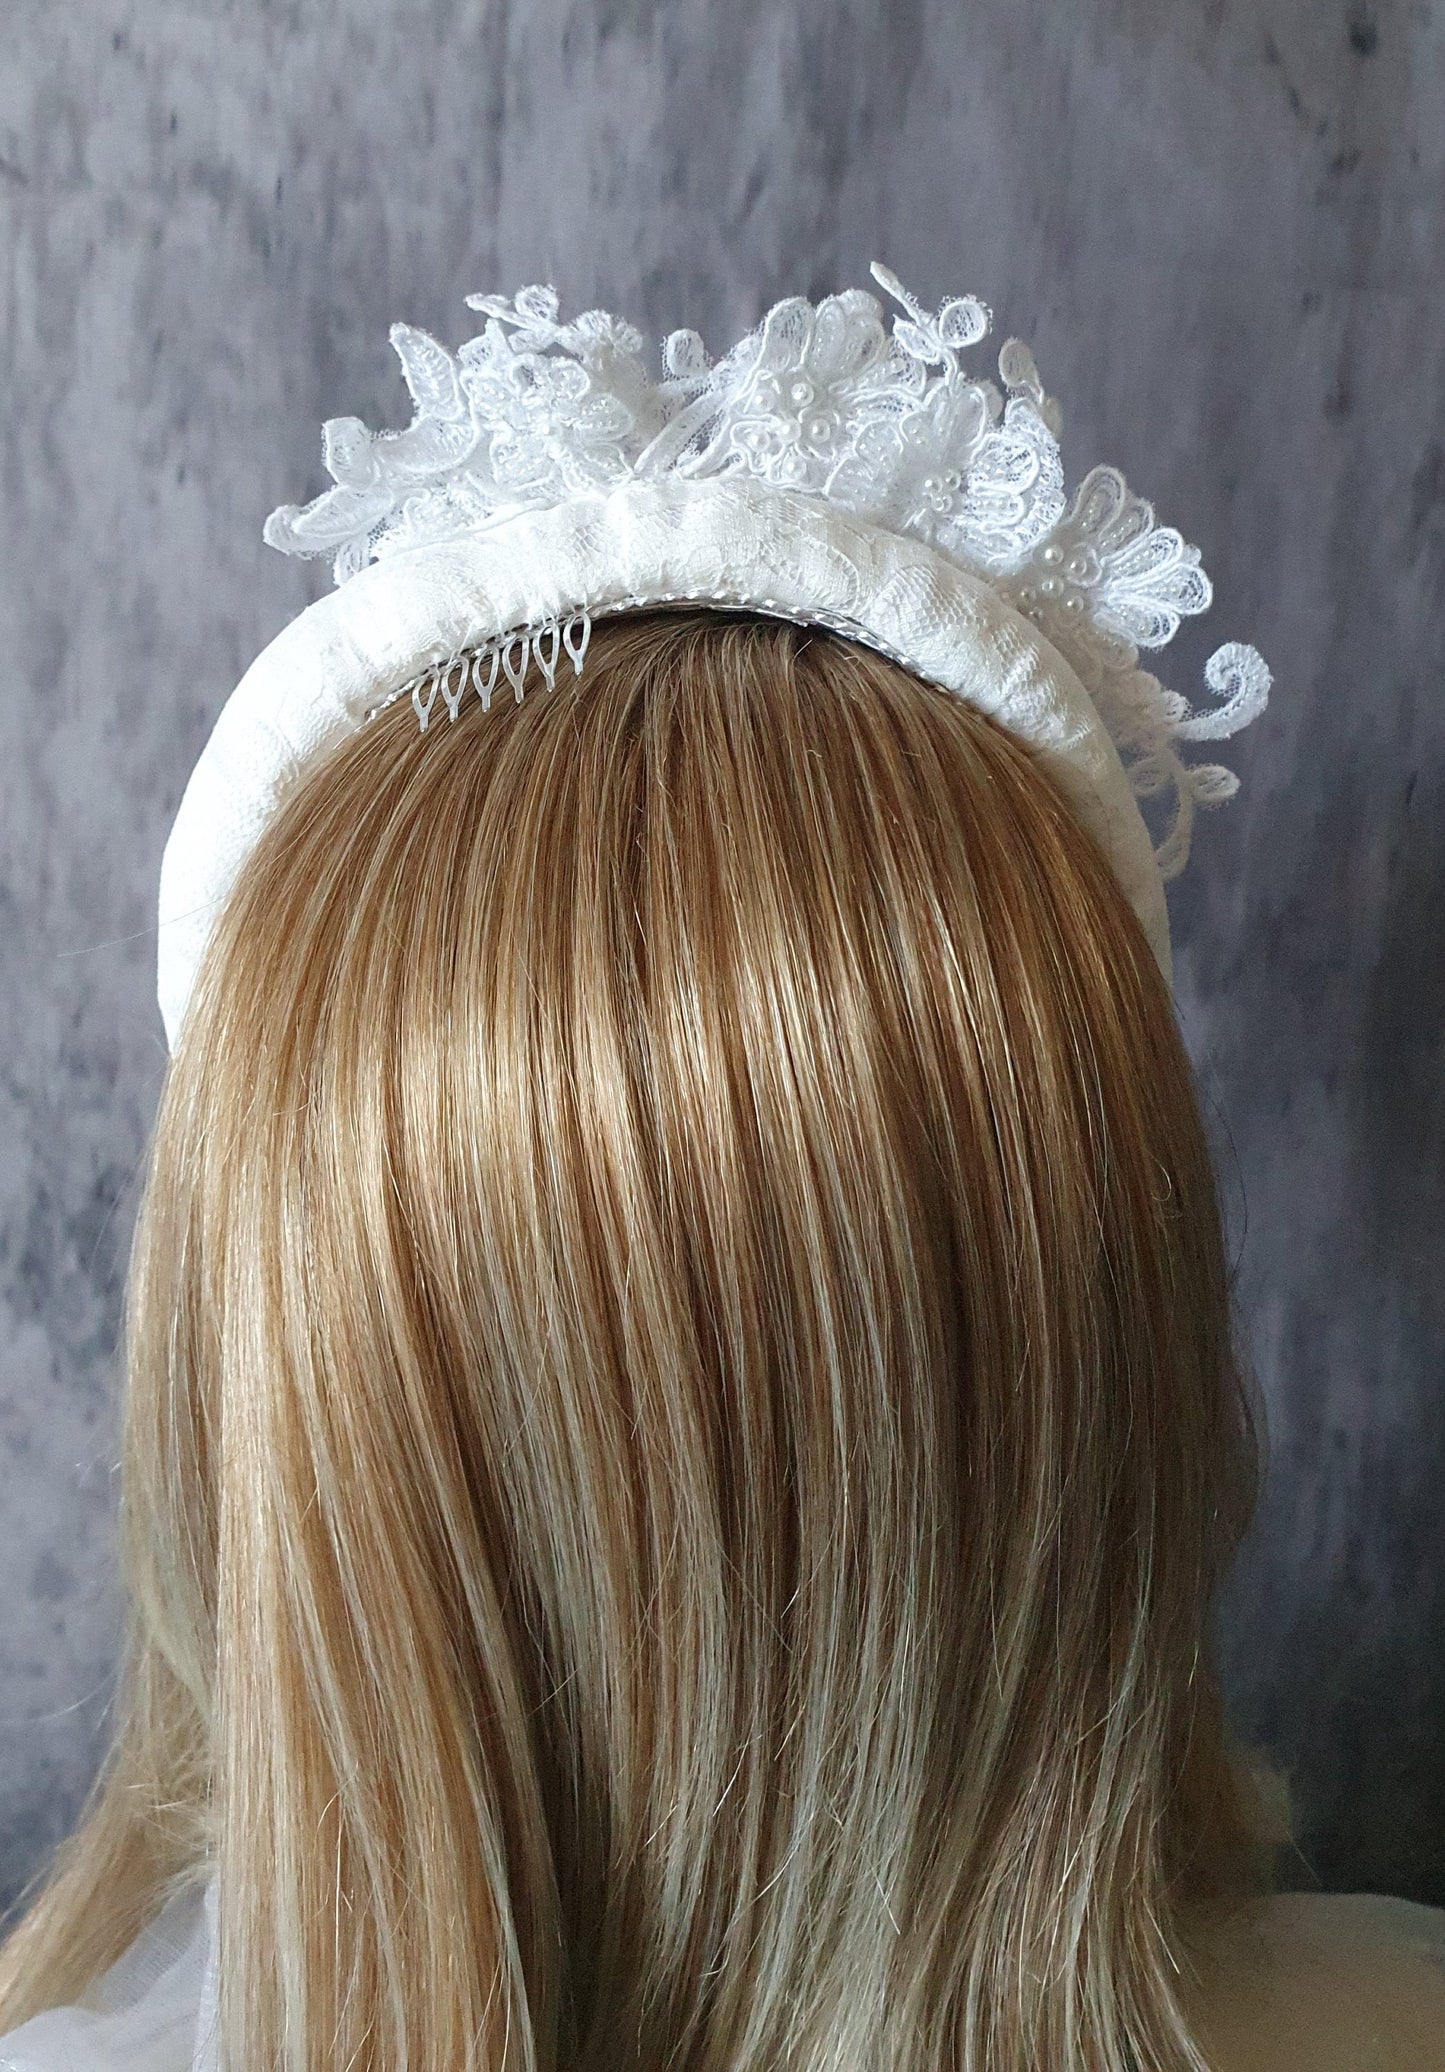 Handgemaakte Paarse Haarband met Kant en Bloemen voor Bruiden - Elegant Bruilofts haaraccessoire, Tiara met Parels, Kanten Stof, Metalen Kam